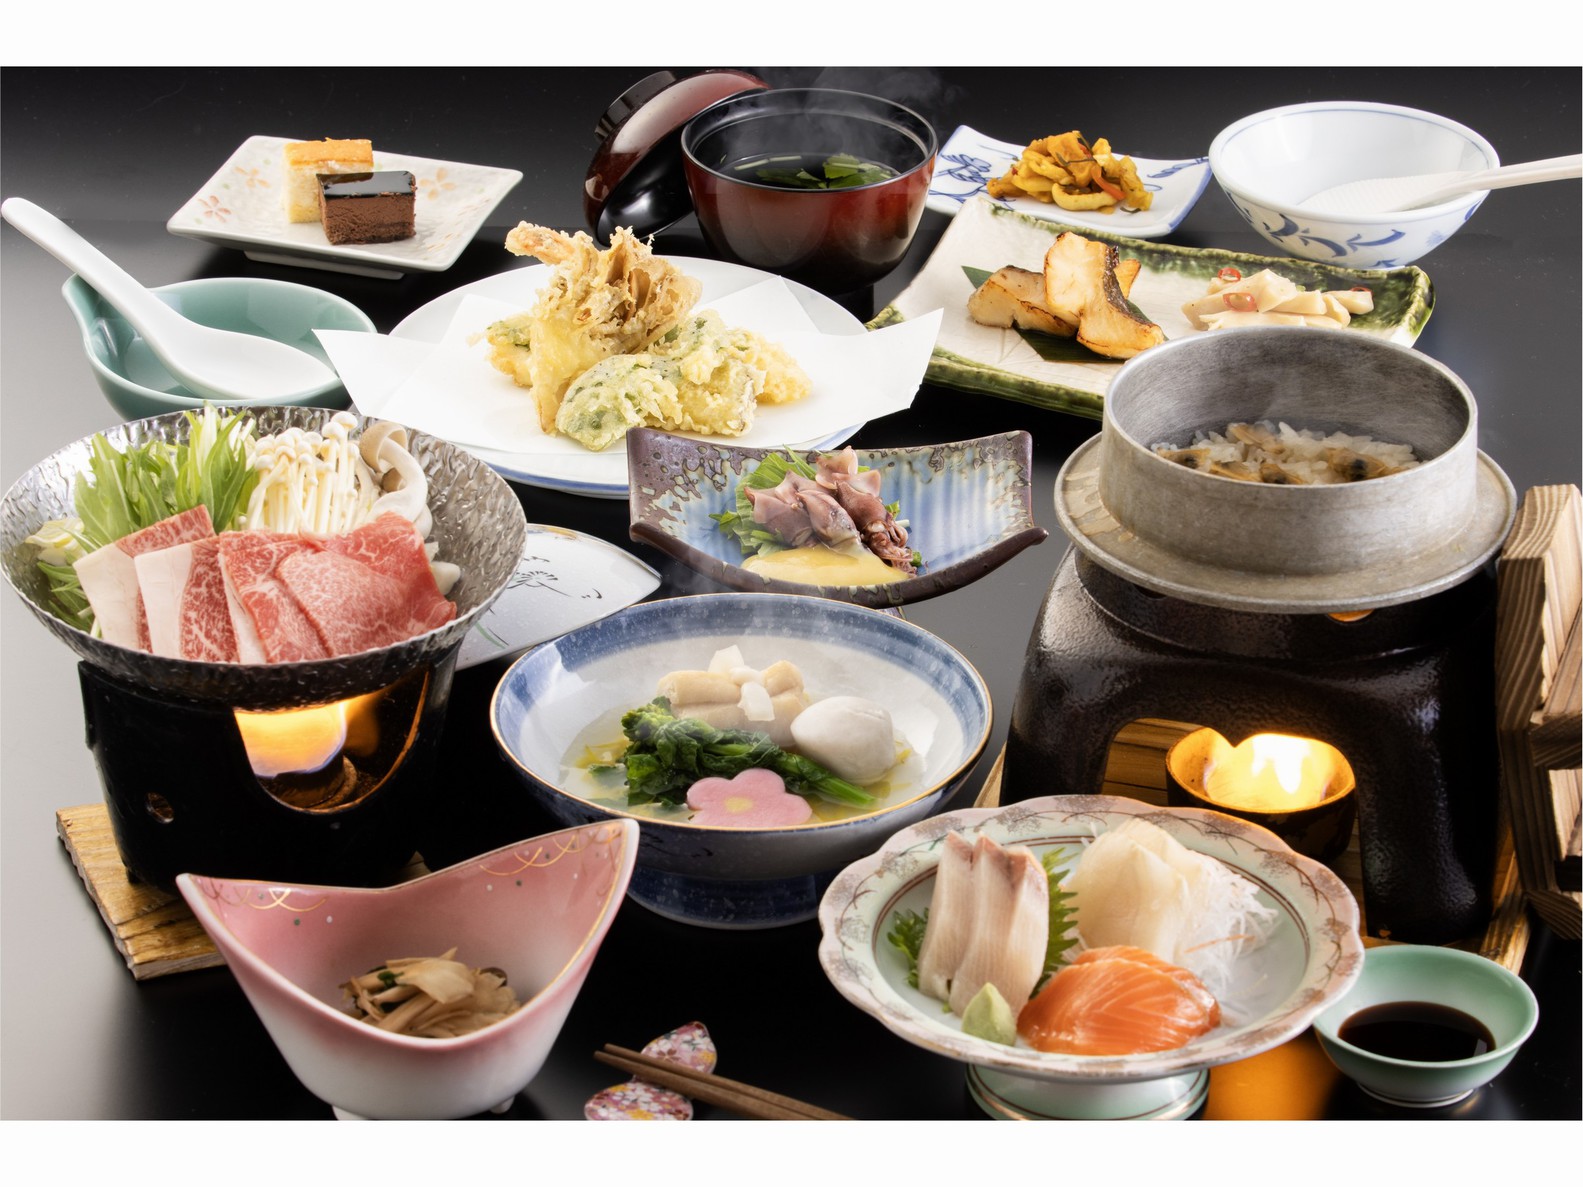 【メインは福島牛鍋と季節の天ぷら】２種類の泉質を堪能するお得な温泉旅!